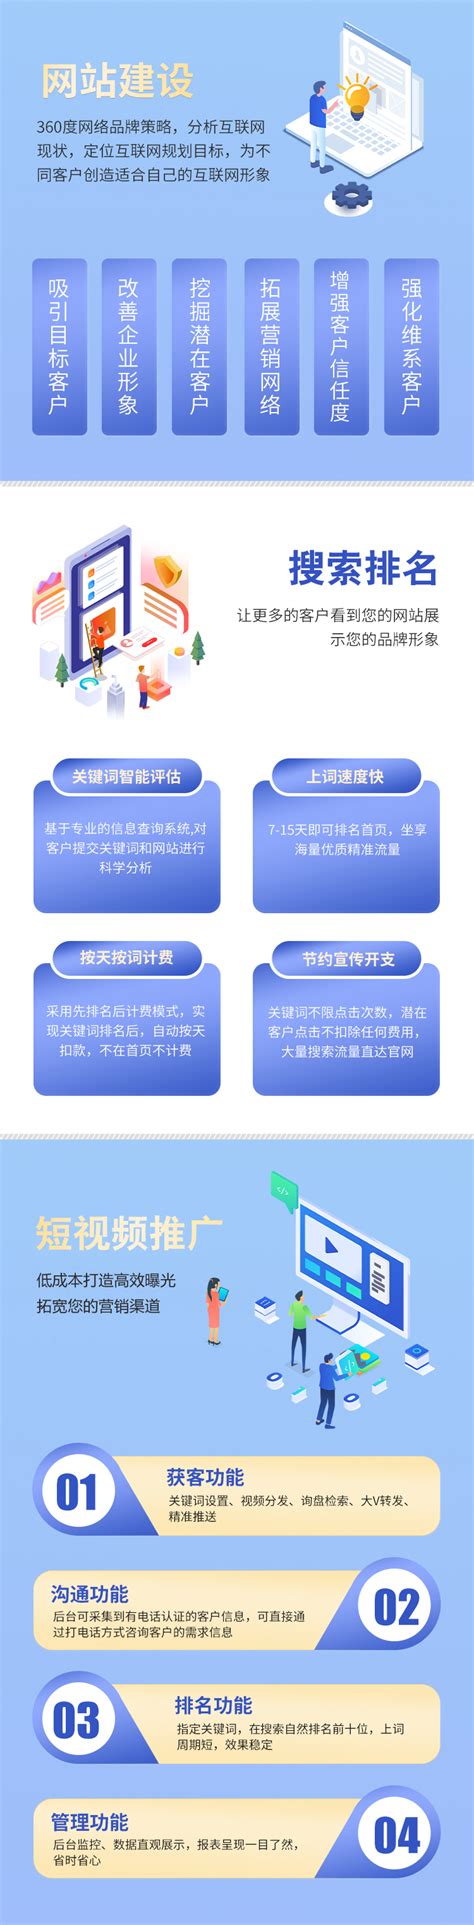 浙江品牌小程序网站建设服务电话